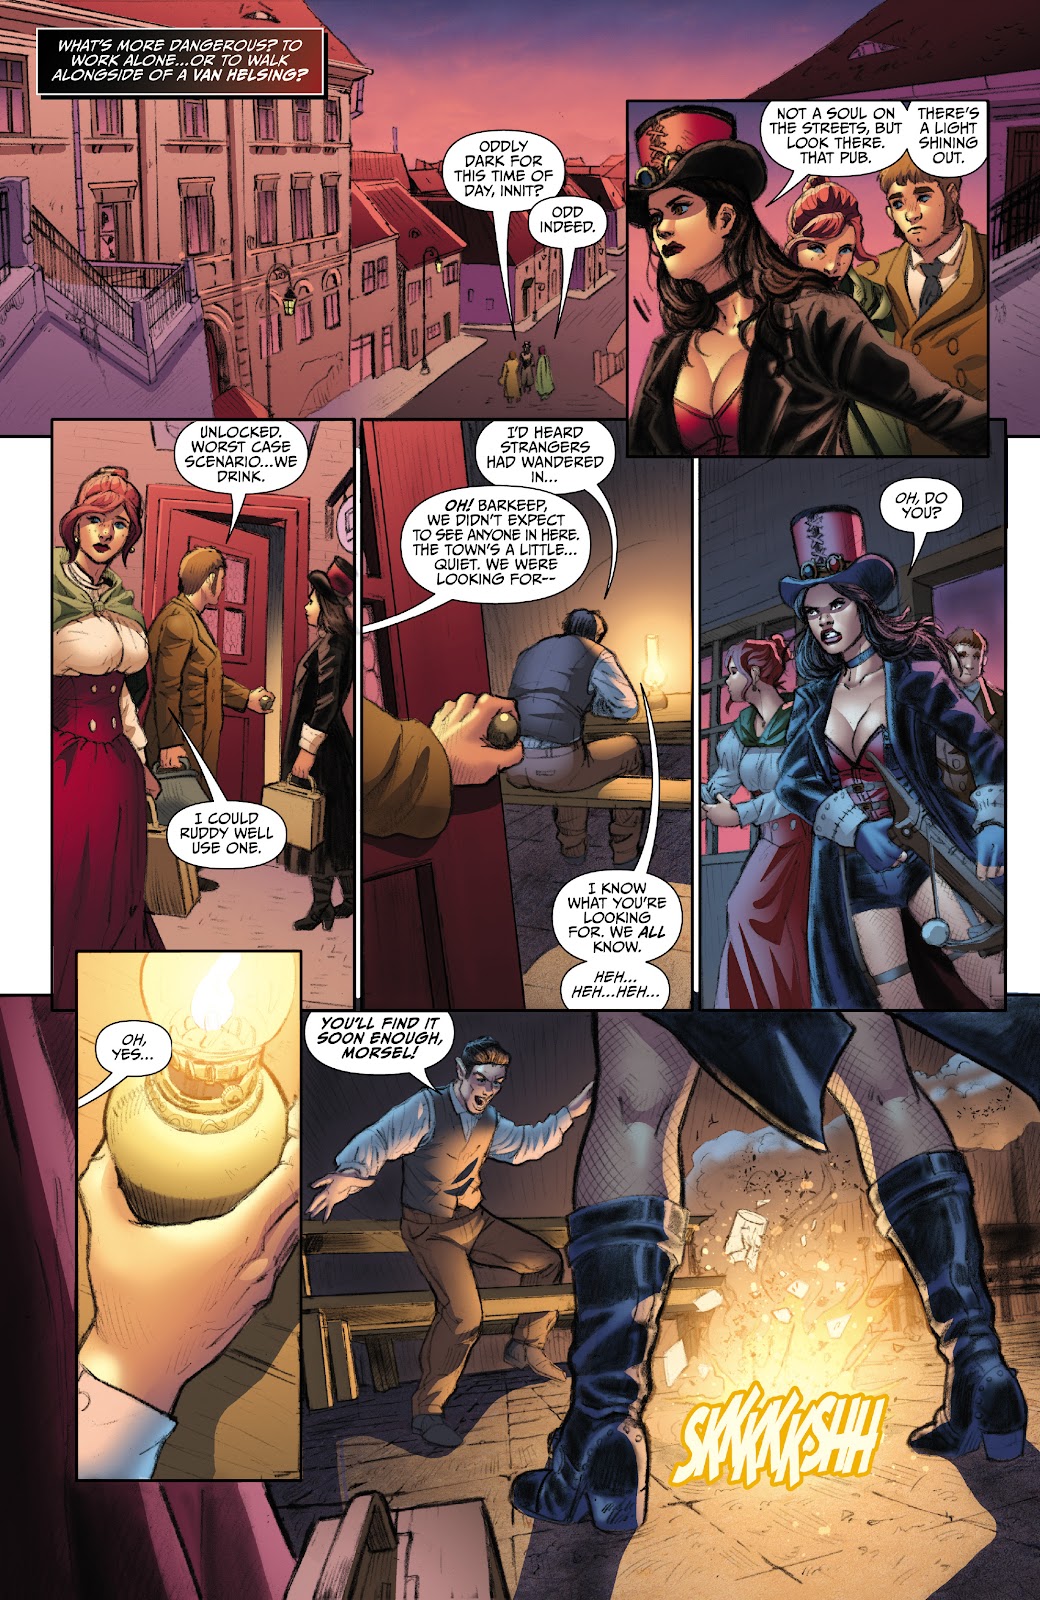 Van Helsing: Vampire Hunter issue 1 - Page 14